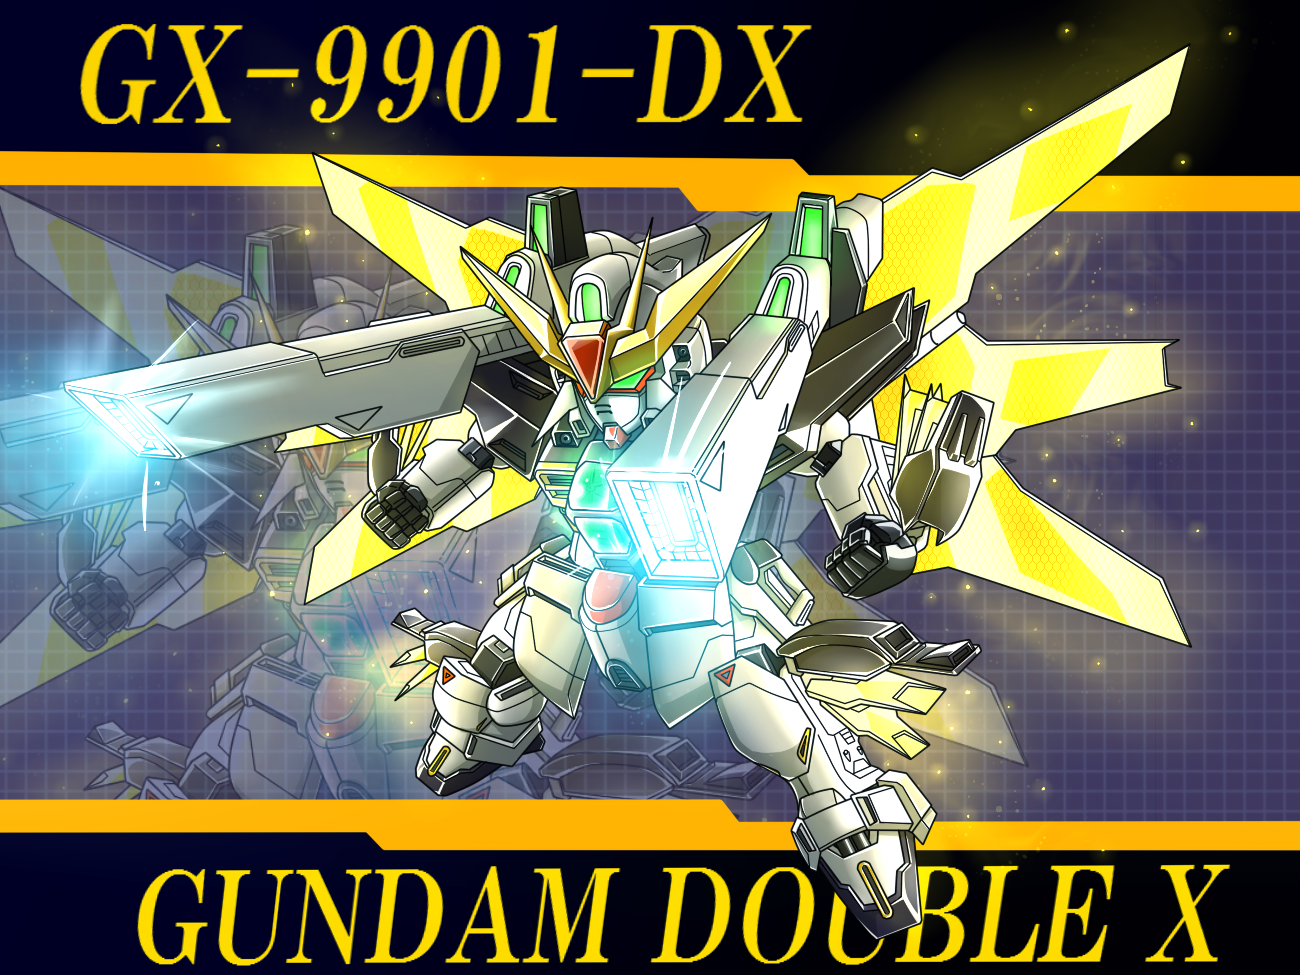 Anime Mechs Gundam Double X After War Gundam X Gundam Super Robot Taisen Artwork Digital Art Fan Art 1300x975